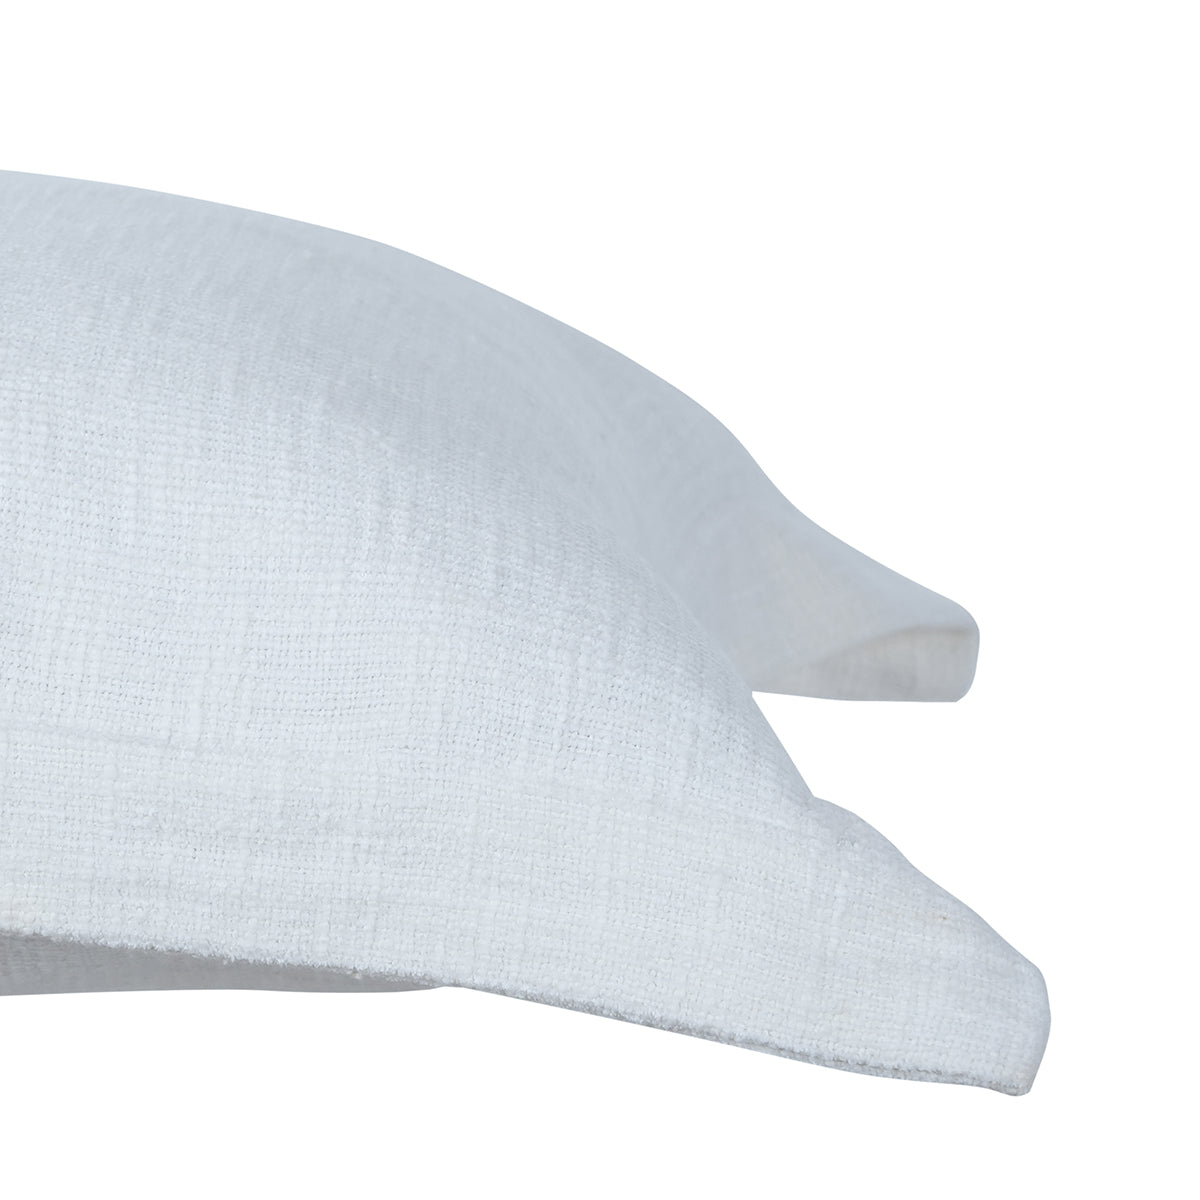 Tranquil Essence Burb Slub Off White 2 PC Pillow Sham Set